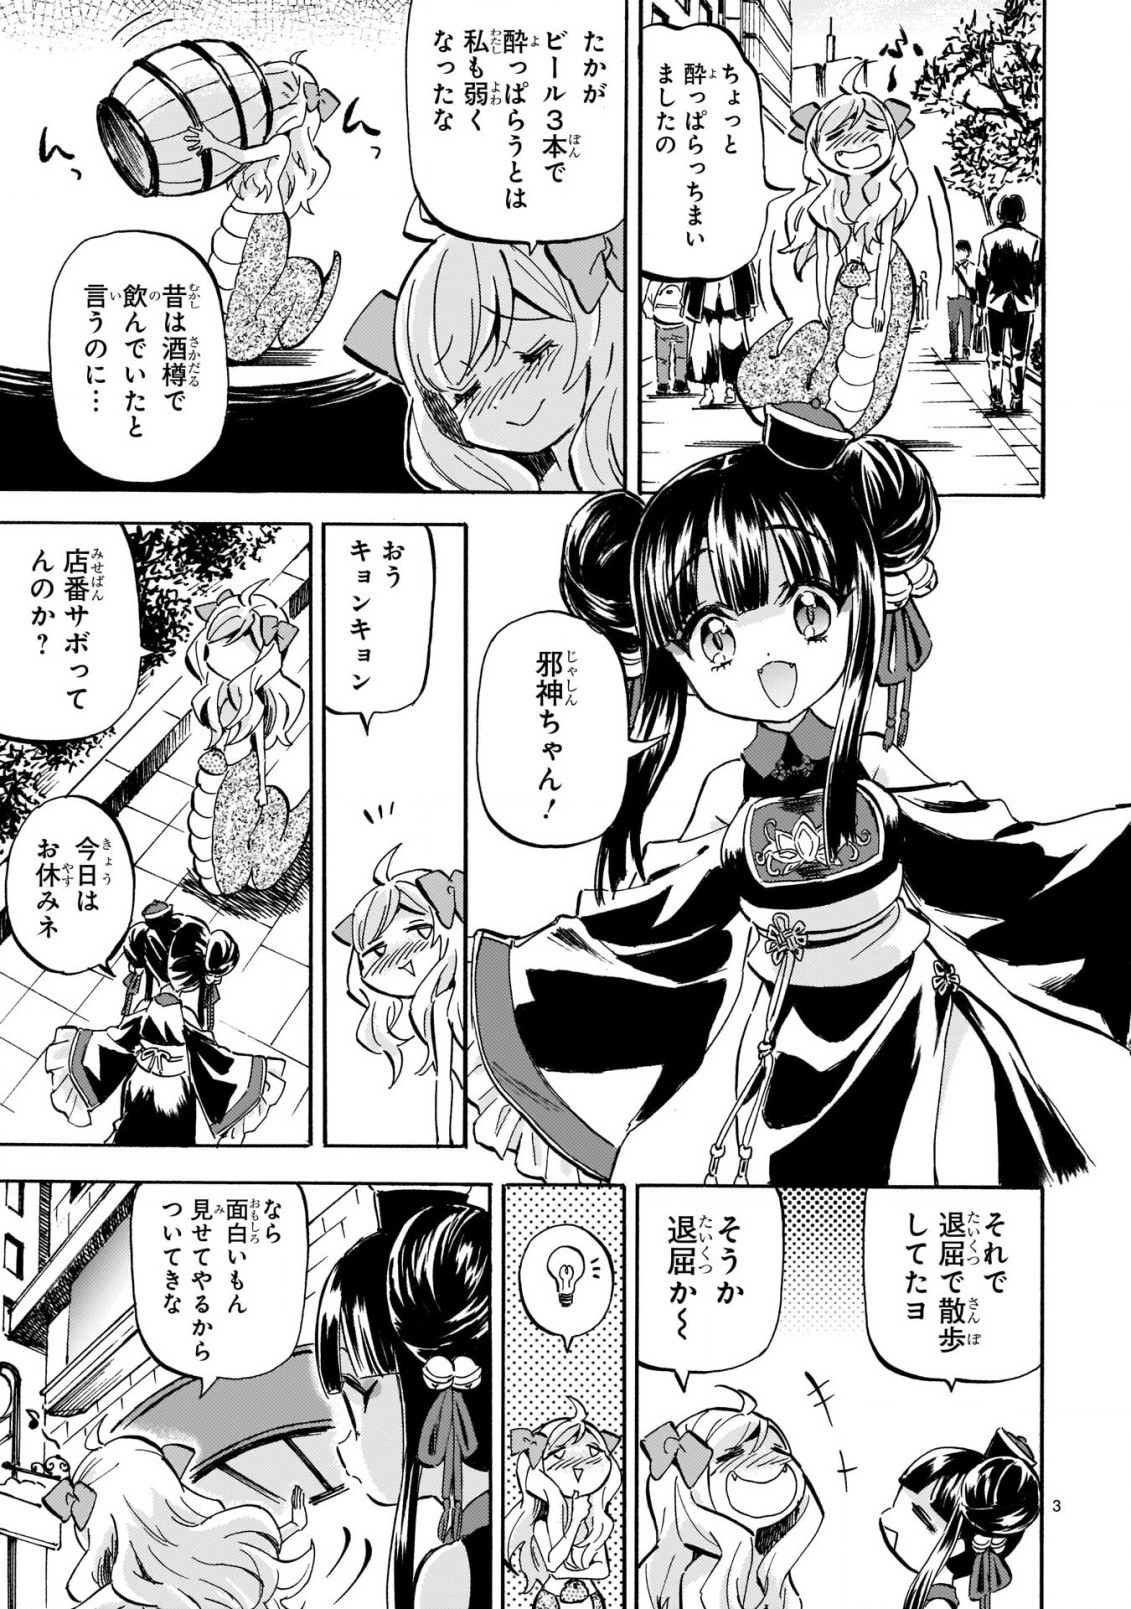 Jashin-chan Dropkick - Chapter 203 - Page 3